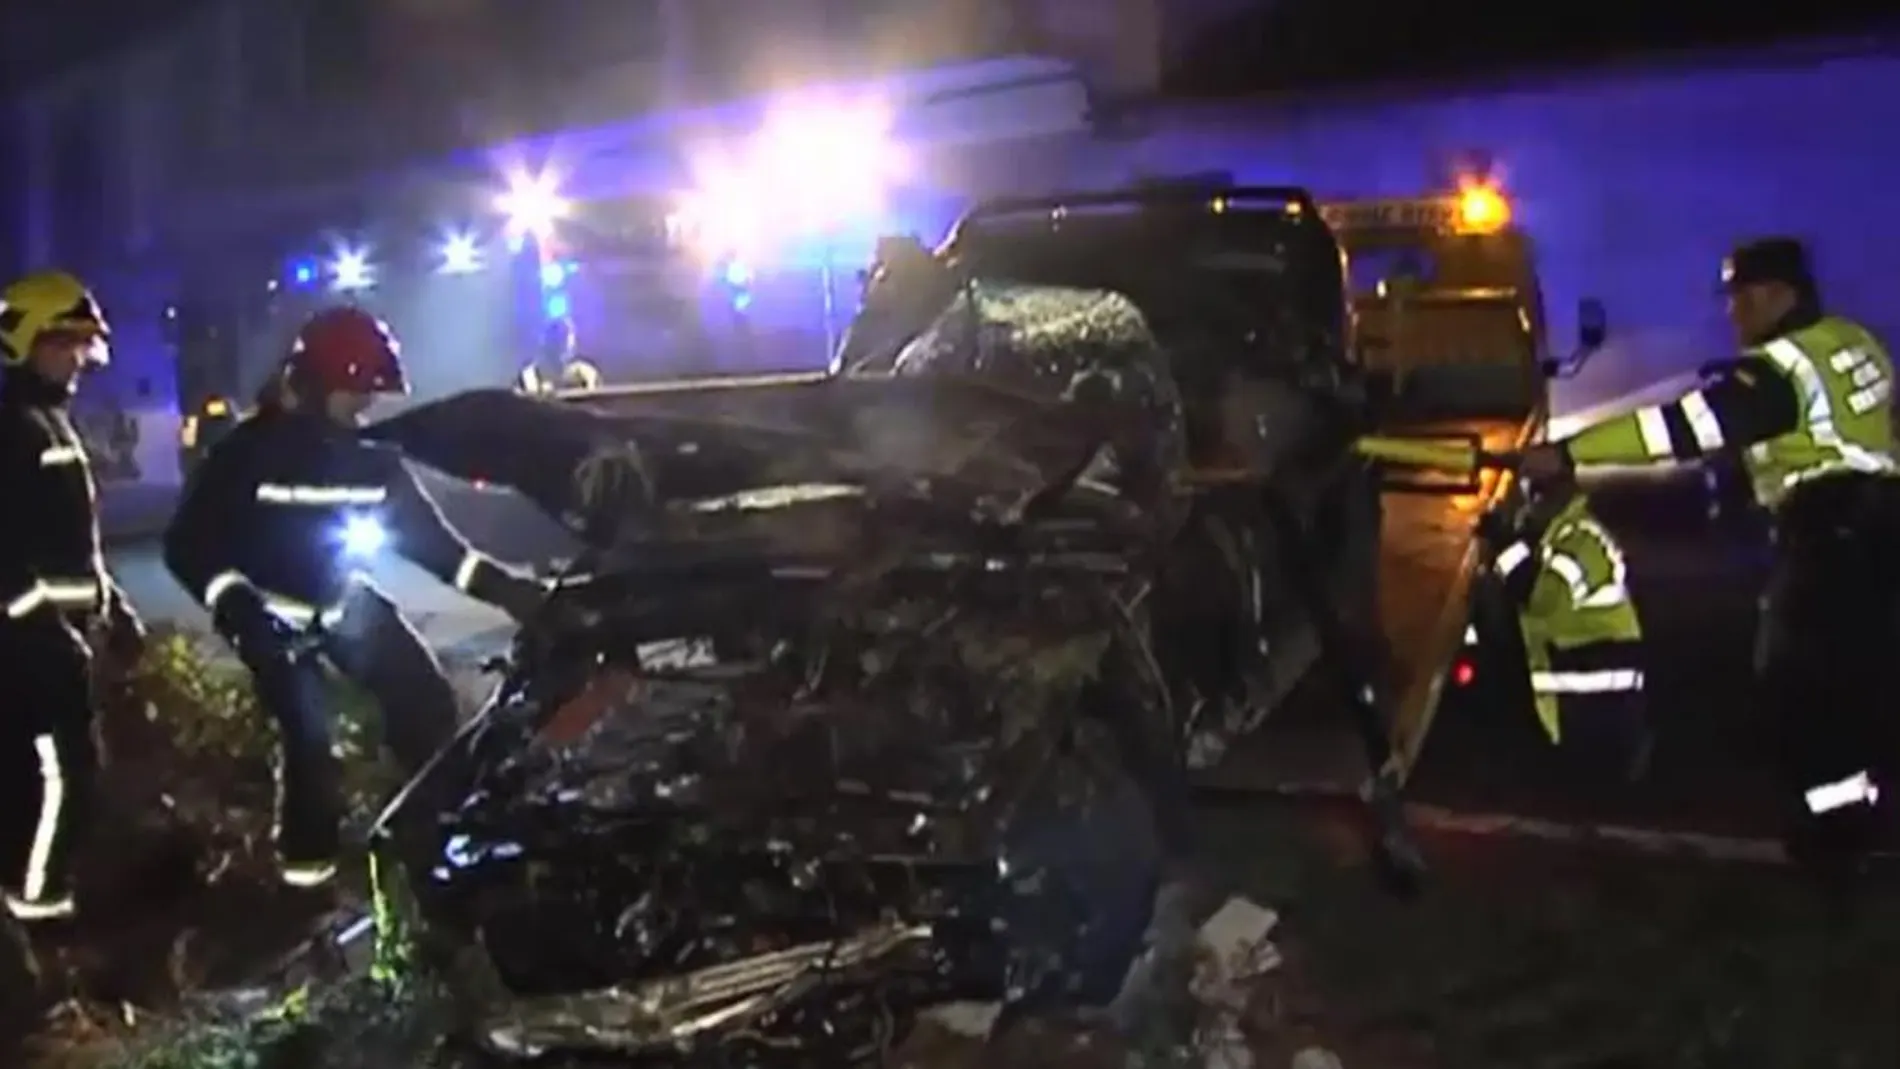 Mueren dos jóvenes en un accidente de tráfico en Monterrei (Orense)